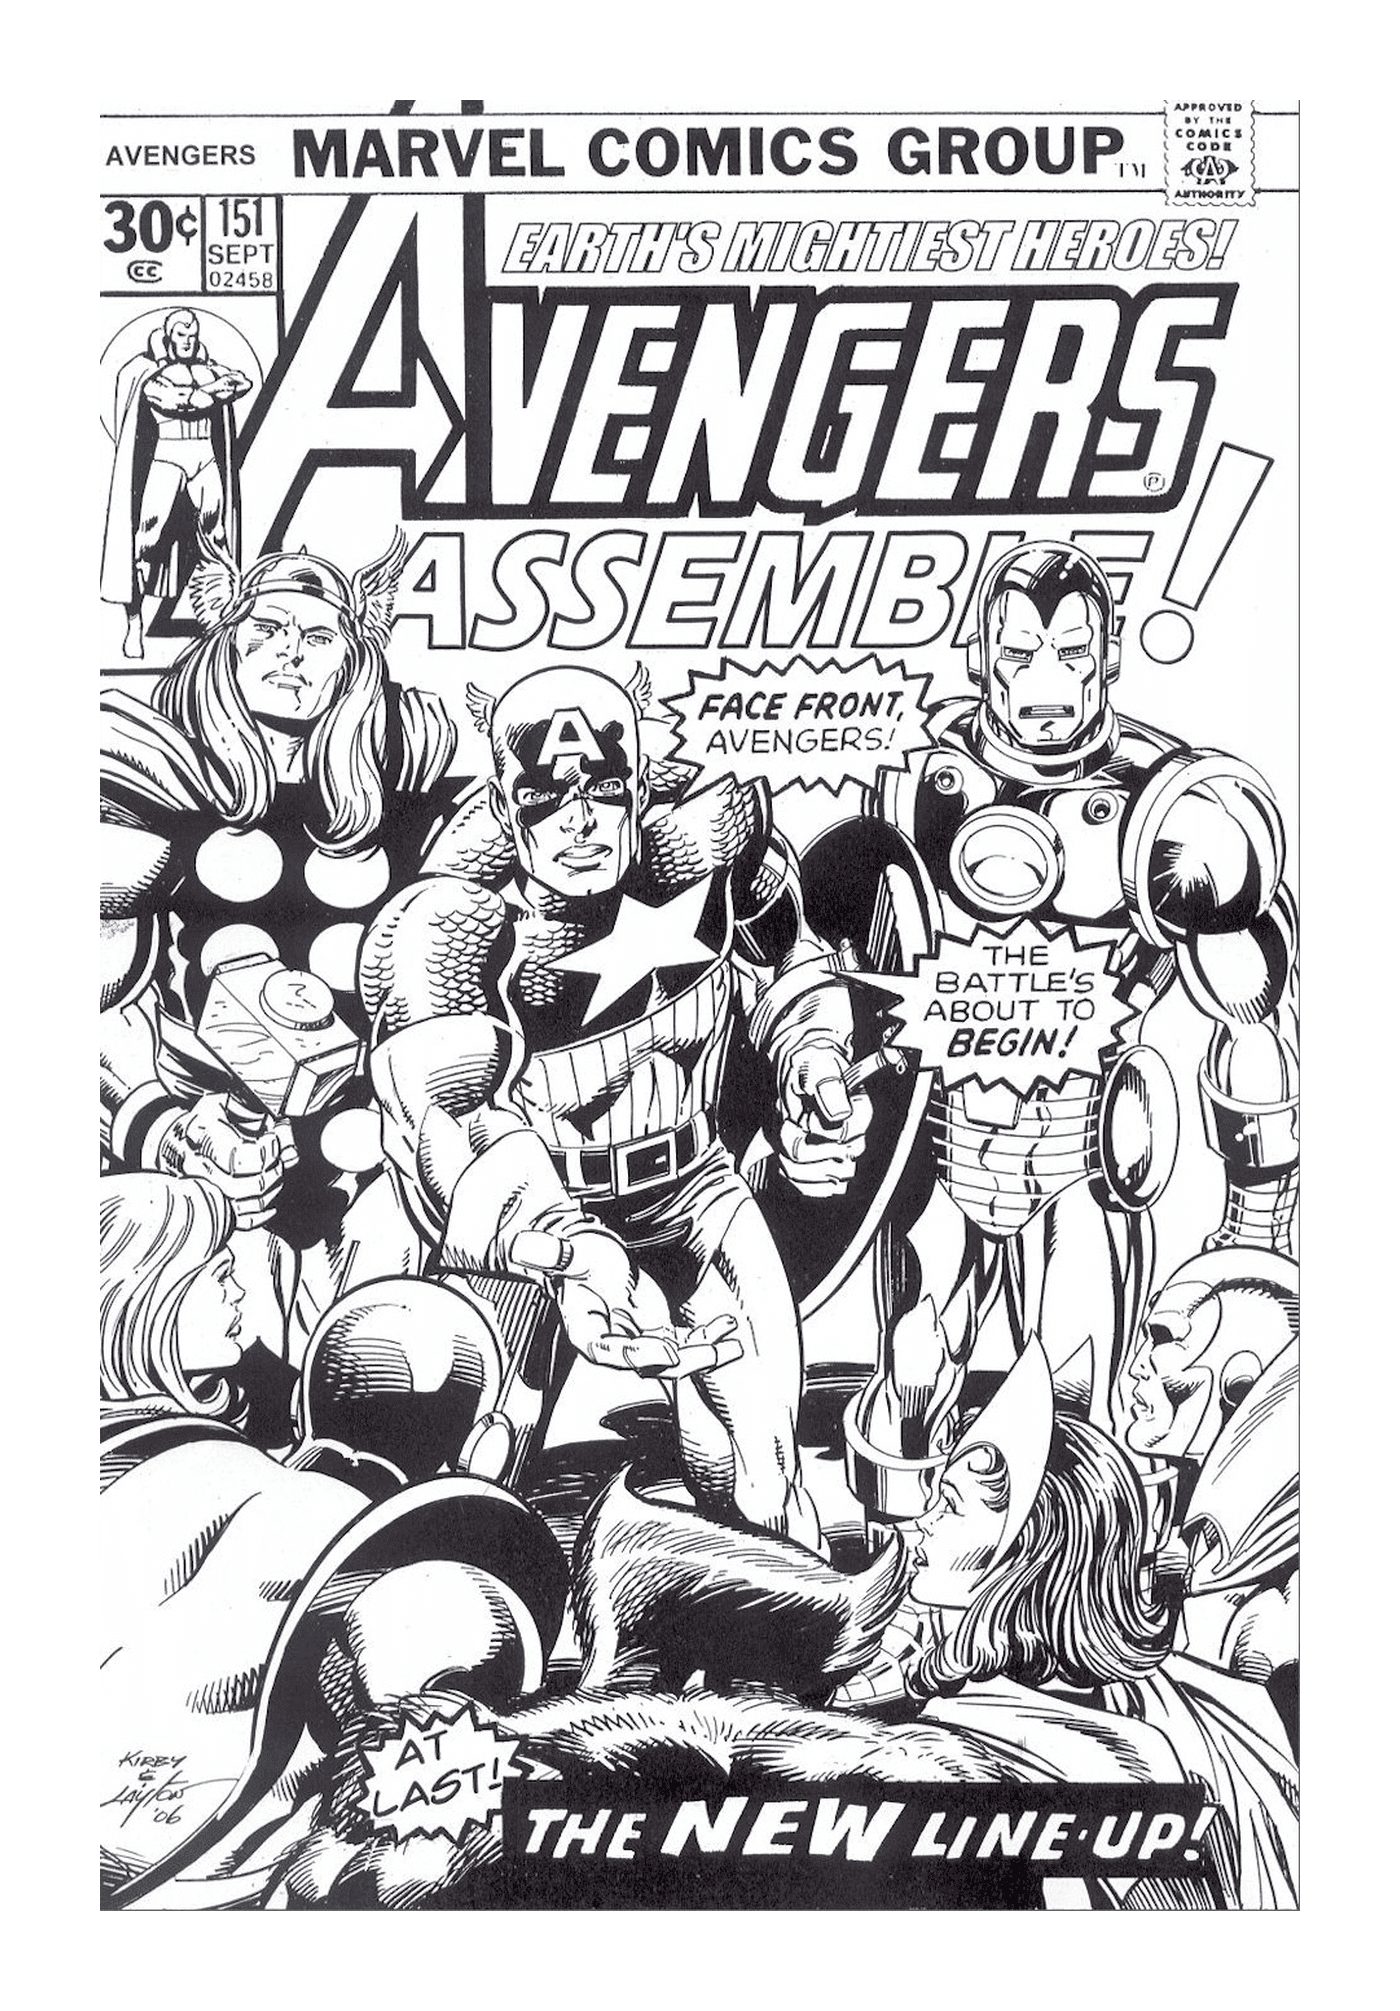   Une couverture de comics Marvel avec un groupe de super-héros 